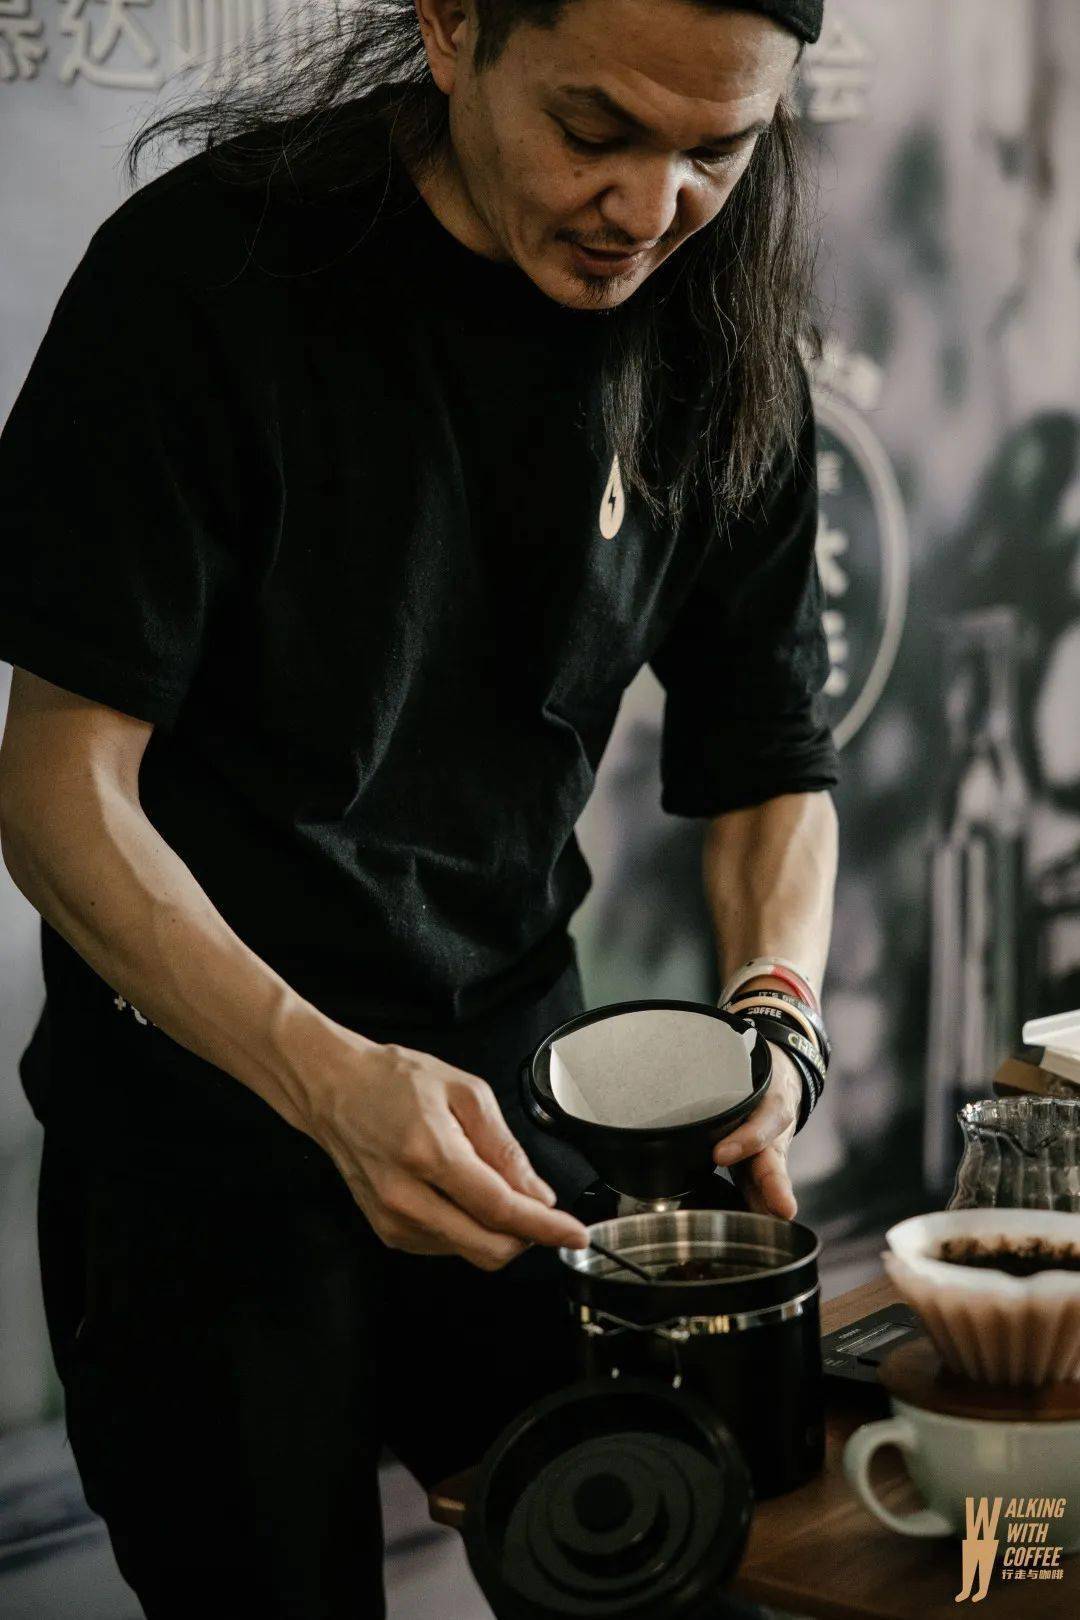 与日本手冲大师铃木康夫一起,体验balmuda the brew咖啡机